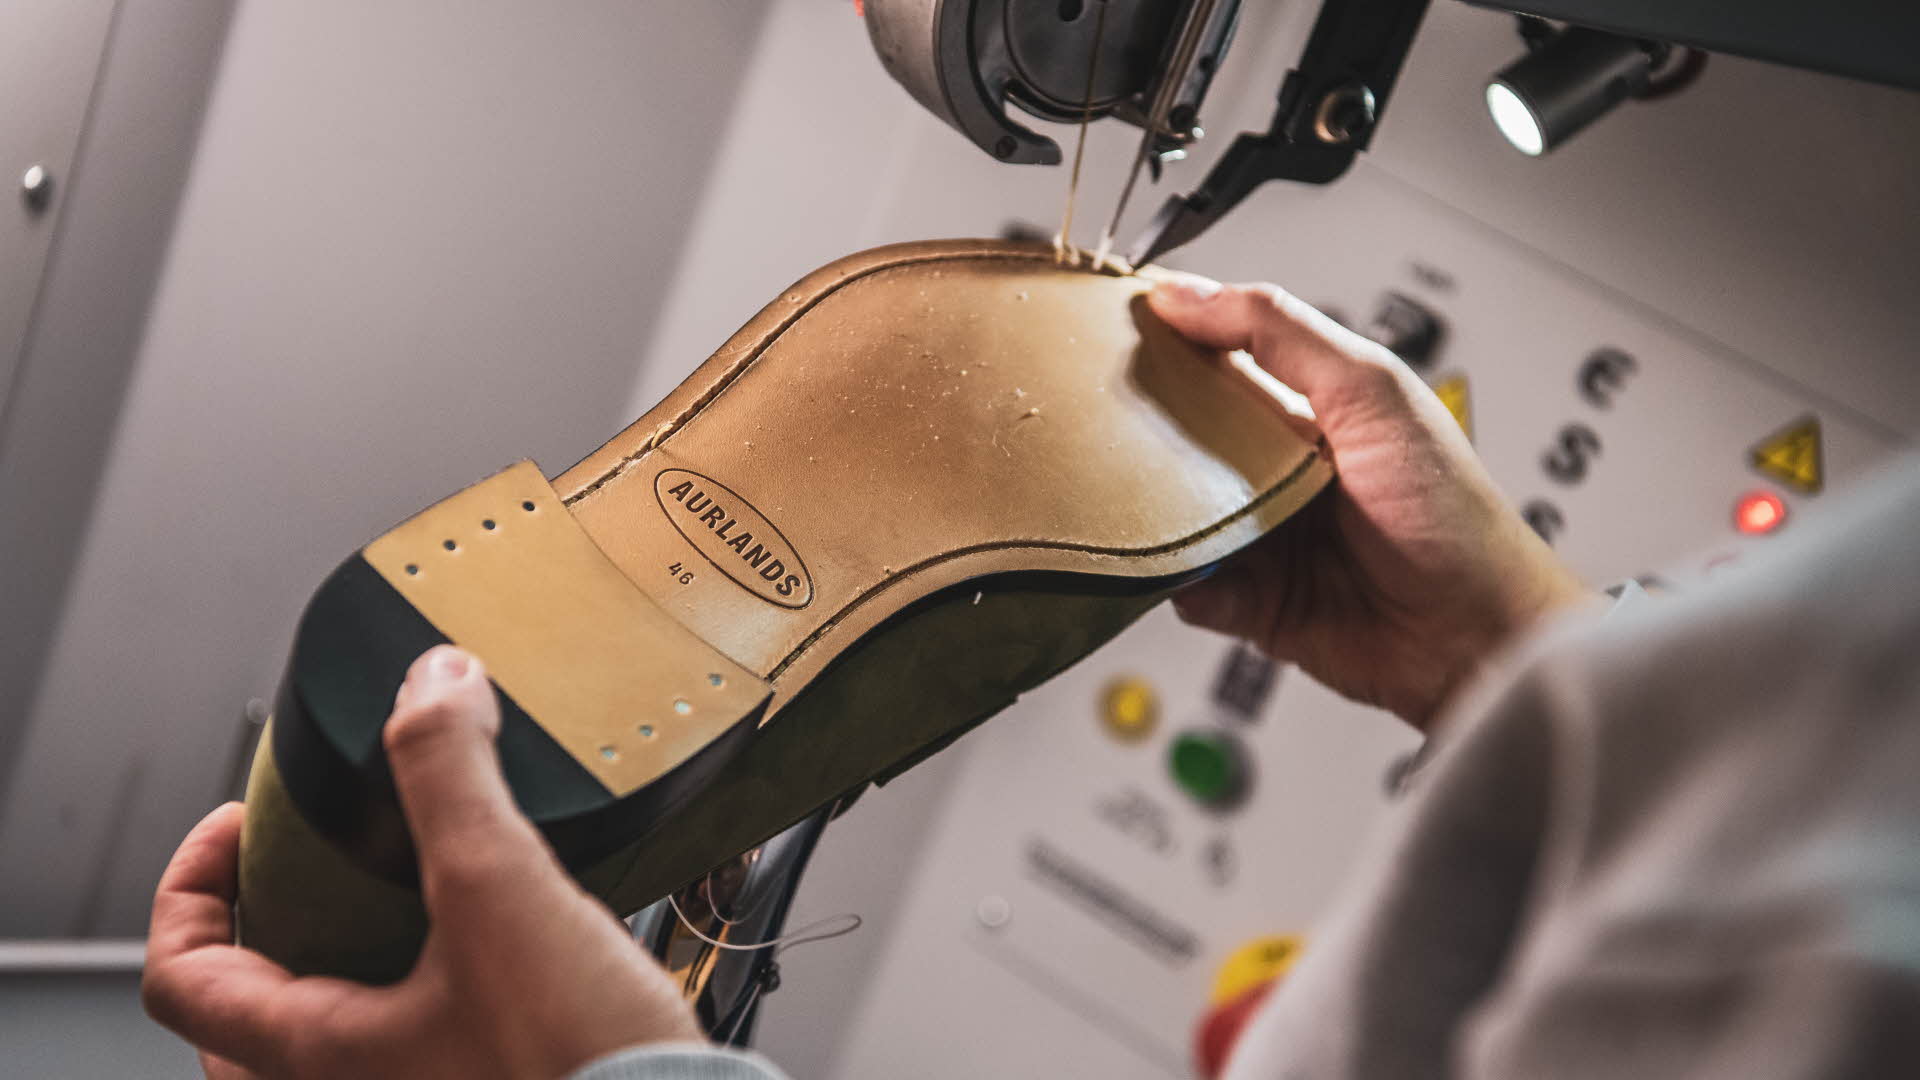 El trabajador está cosiendo la suela inferior del zapato de Aurland. El nuevo logotipo de Aurlands aparece en el mini foco adjunto a la máquina de coser.